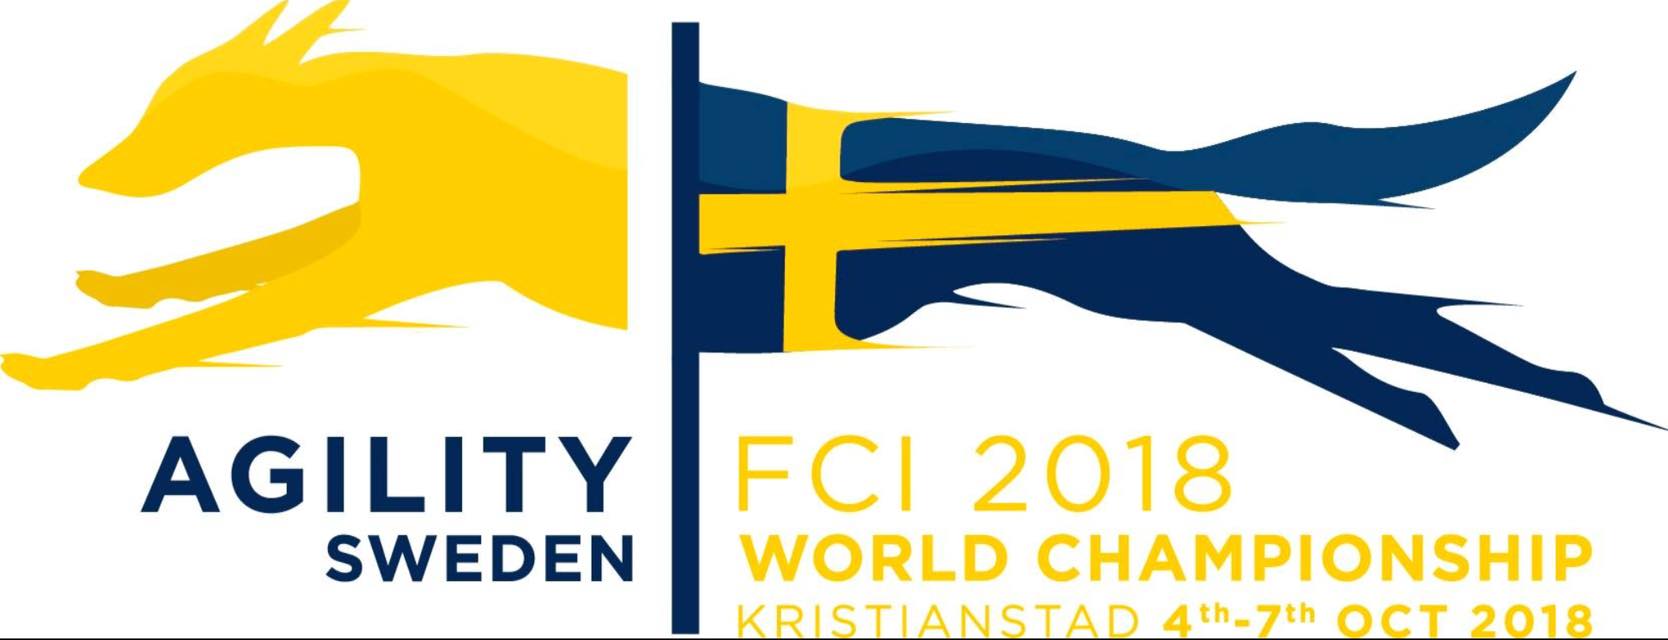 ELEMENT.vet partenaire de l’Equipe de France d’Agility au Championnat du Monde (Suède)